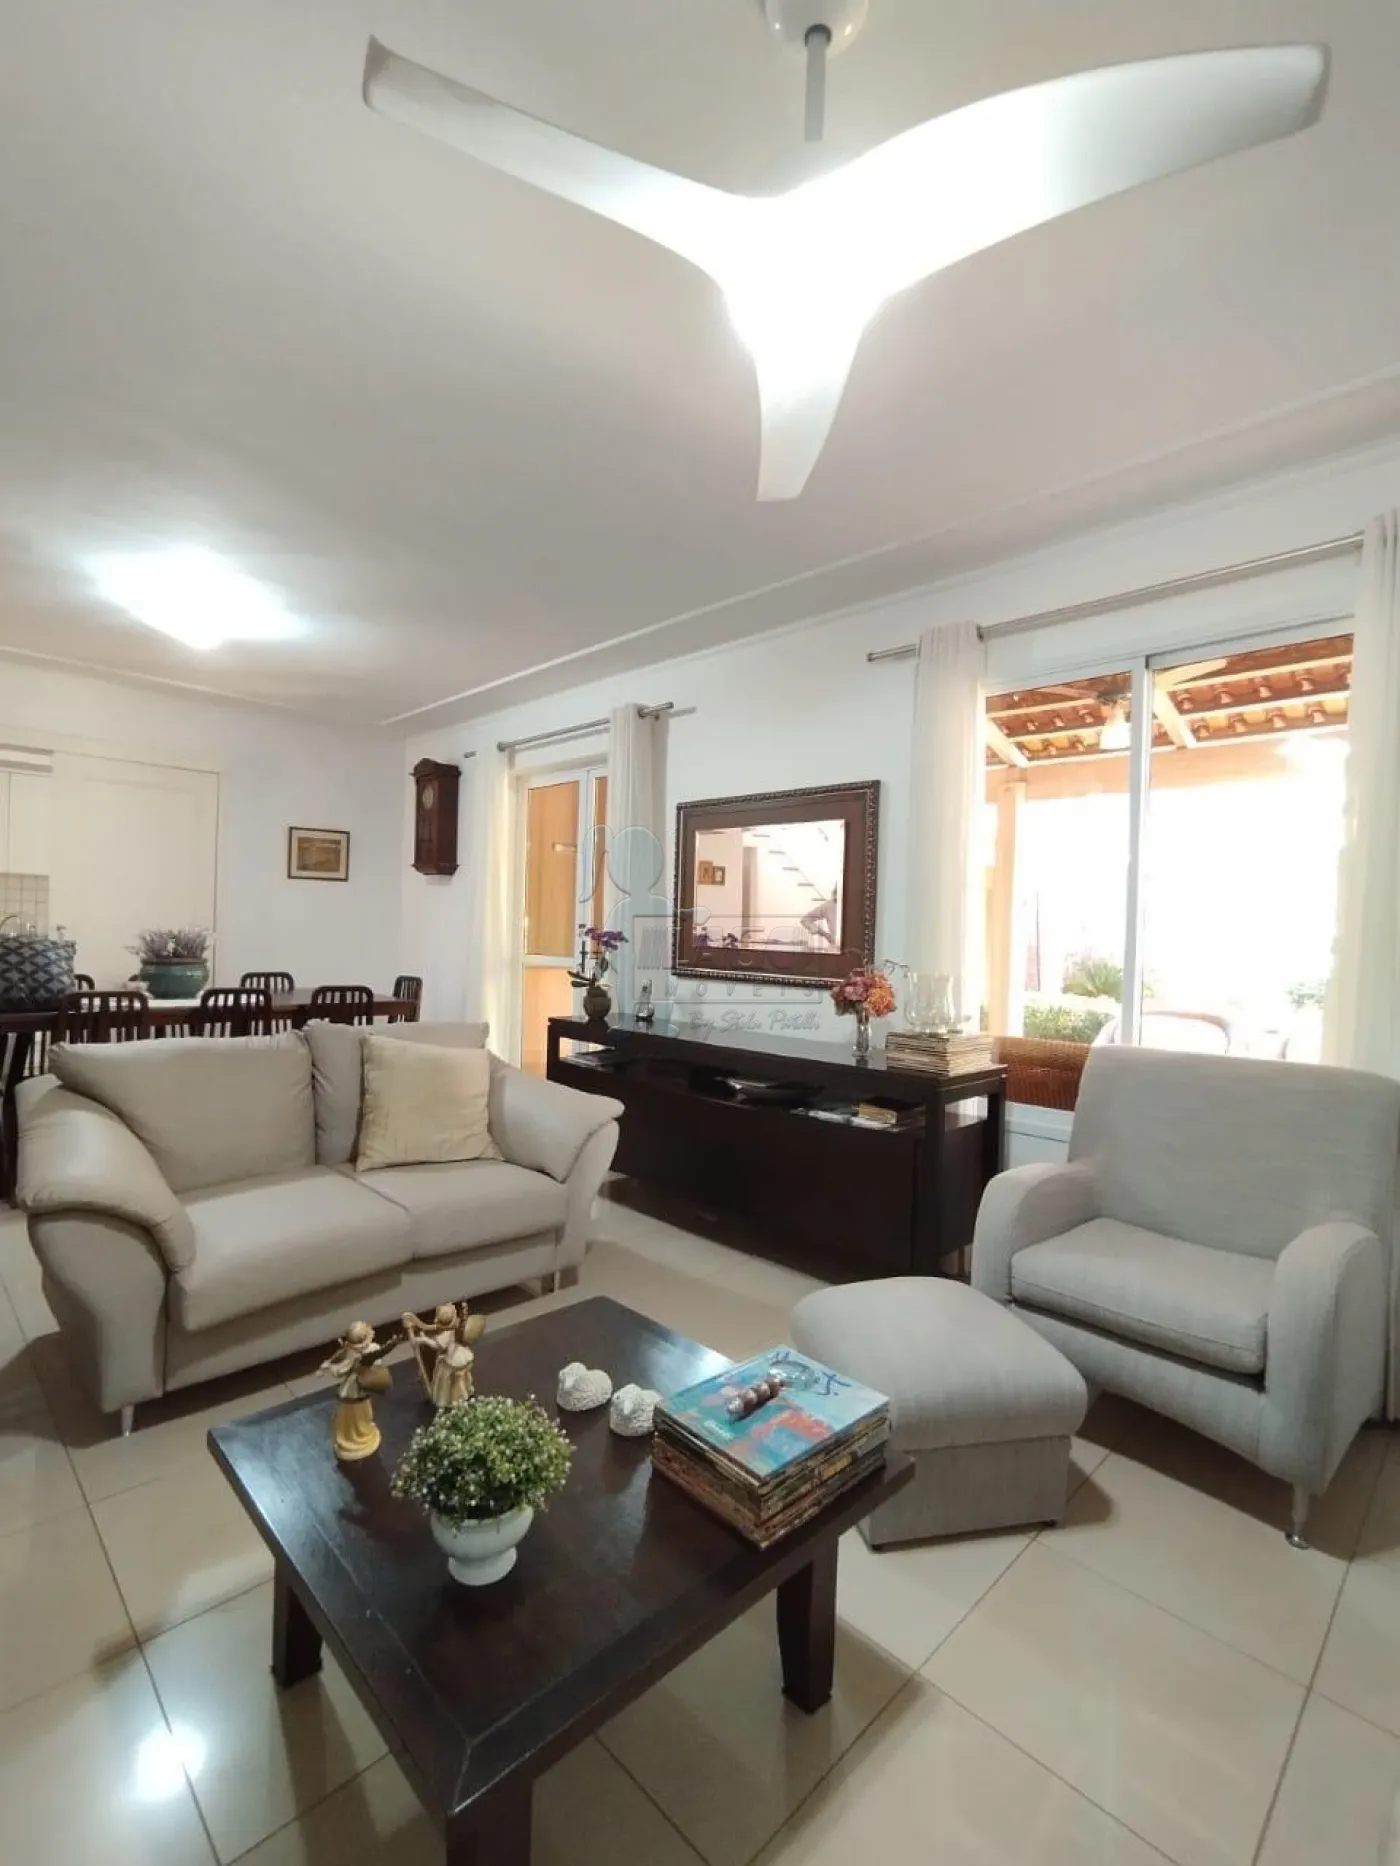 Comprar Casa condomínio / Padrão em Ribeirão Preto R$ 1.300.000,00 - Foto 12